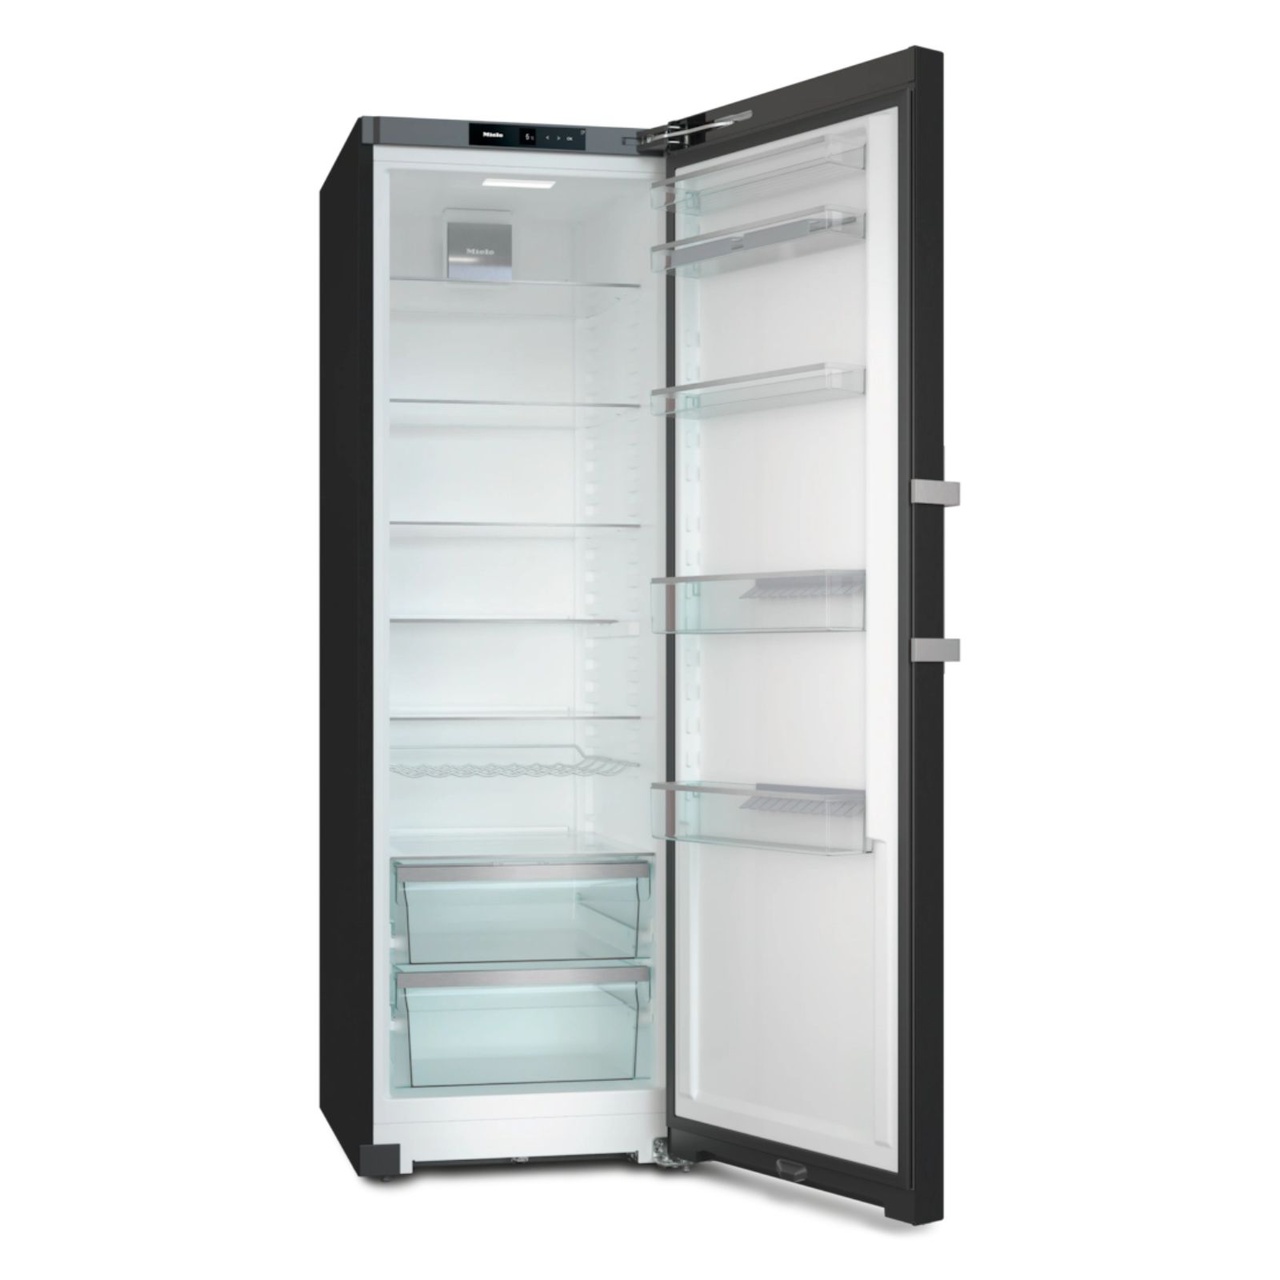 Fristående kylskåp KS4783EDN Blacksteel